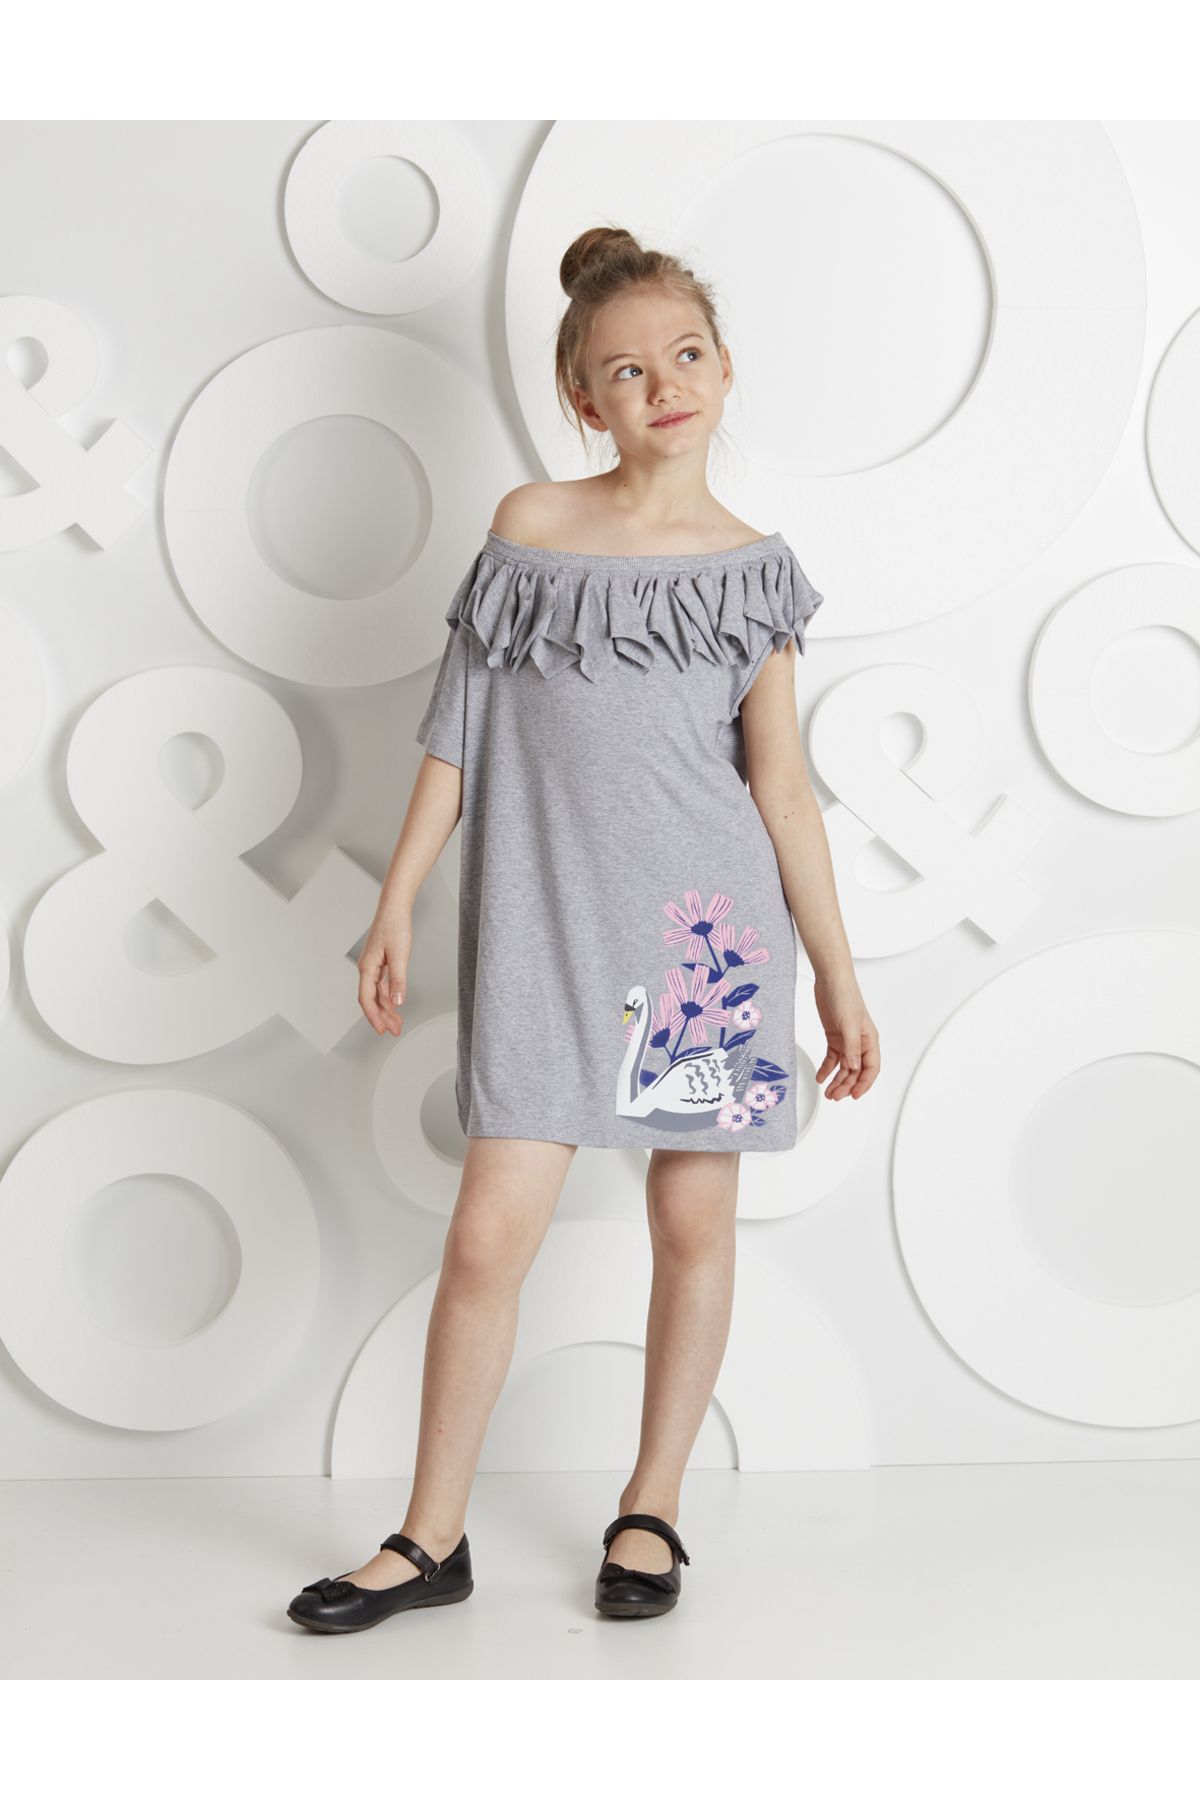 MSHB&G Kuğu Tek Kol Kız Çocuk Elbise